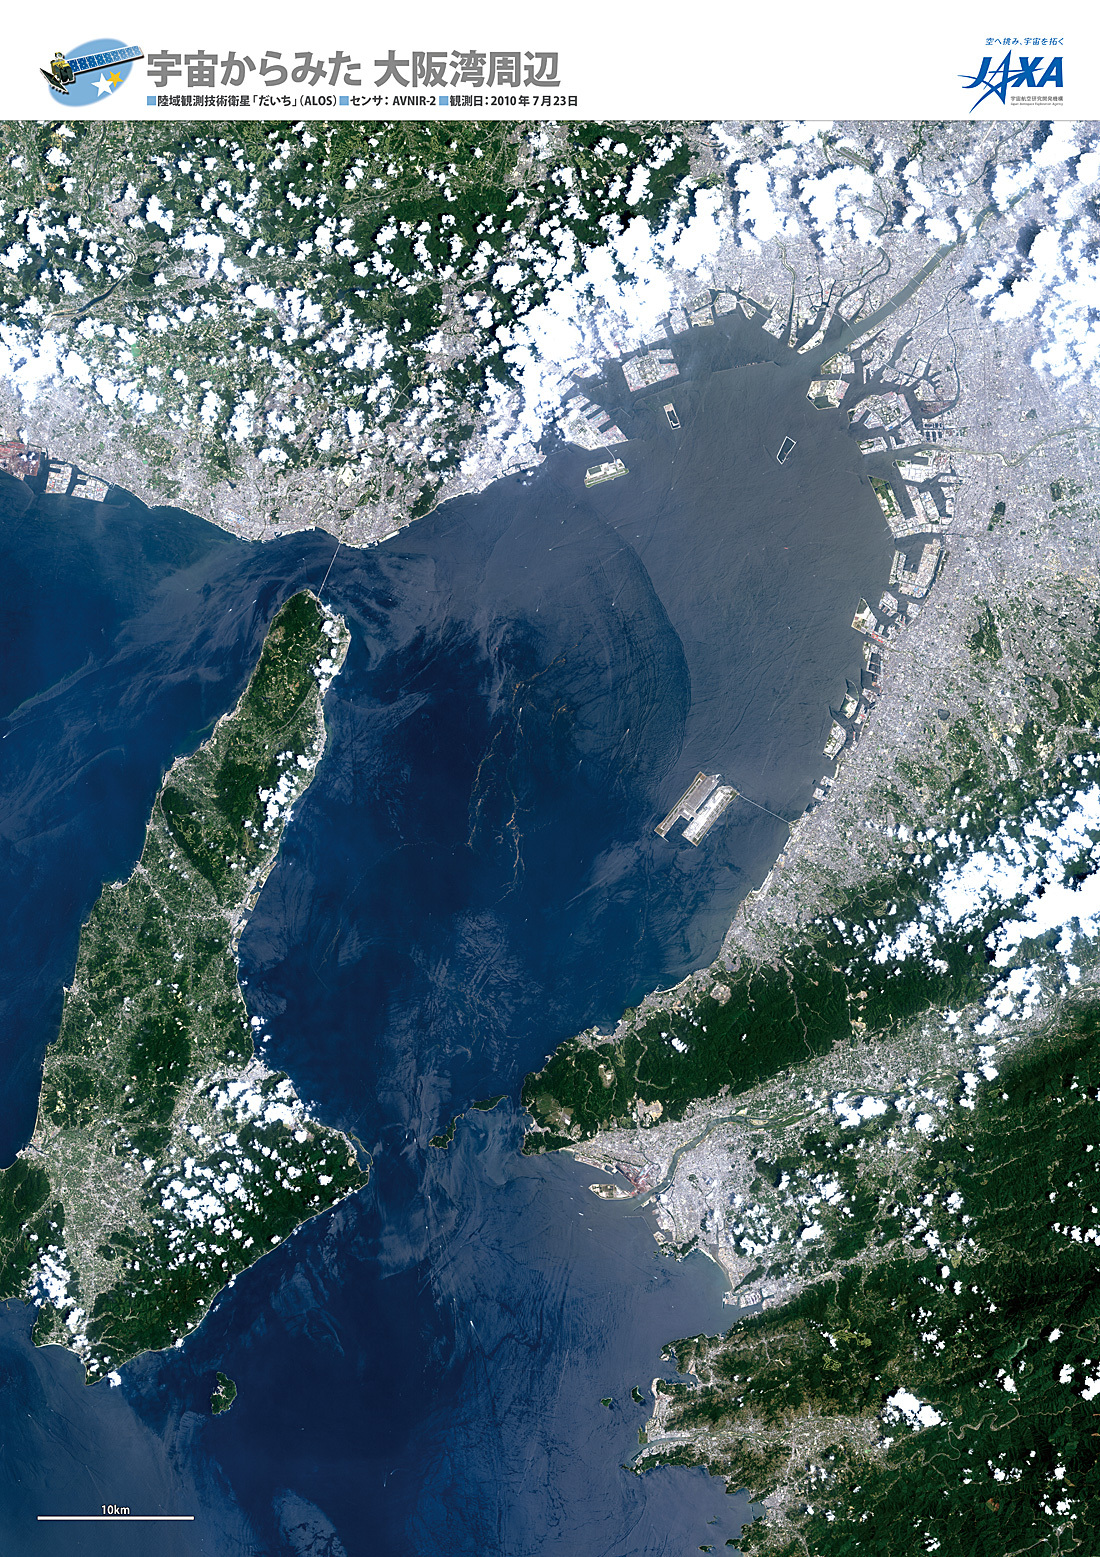 だいちから見た日本の都市 大阪湾周辺:衛星画像（ポスター仕上げ）